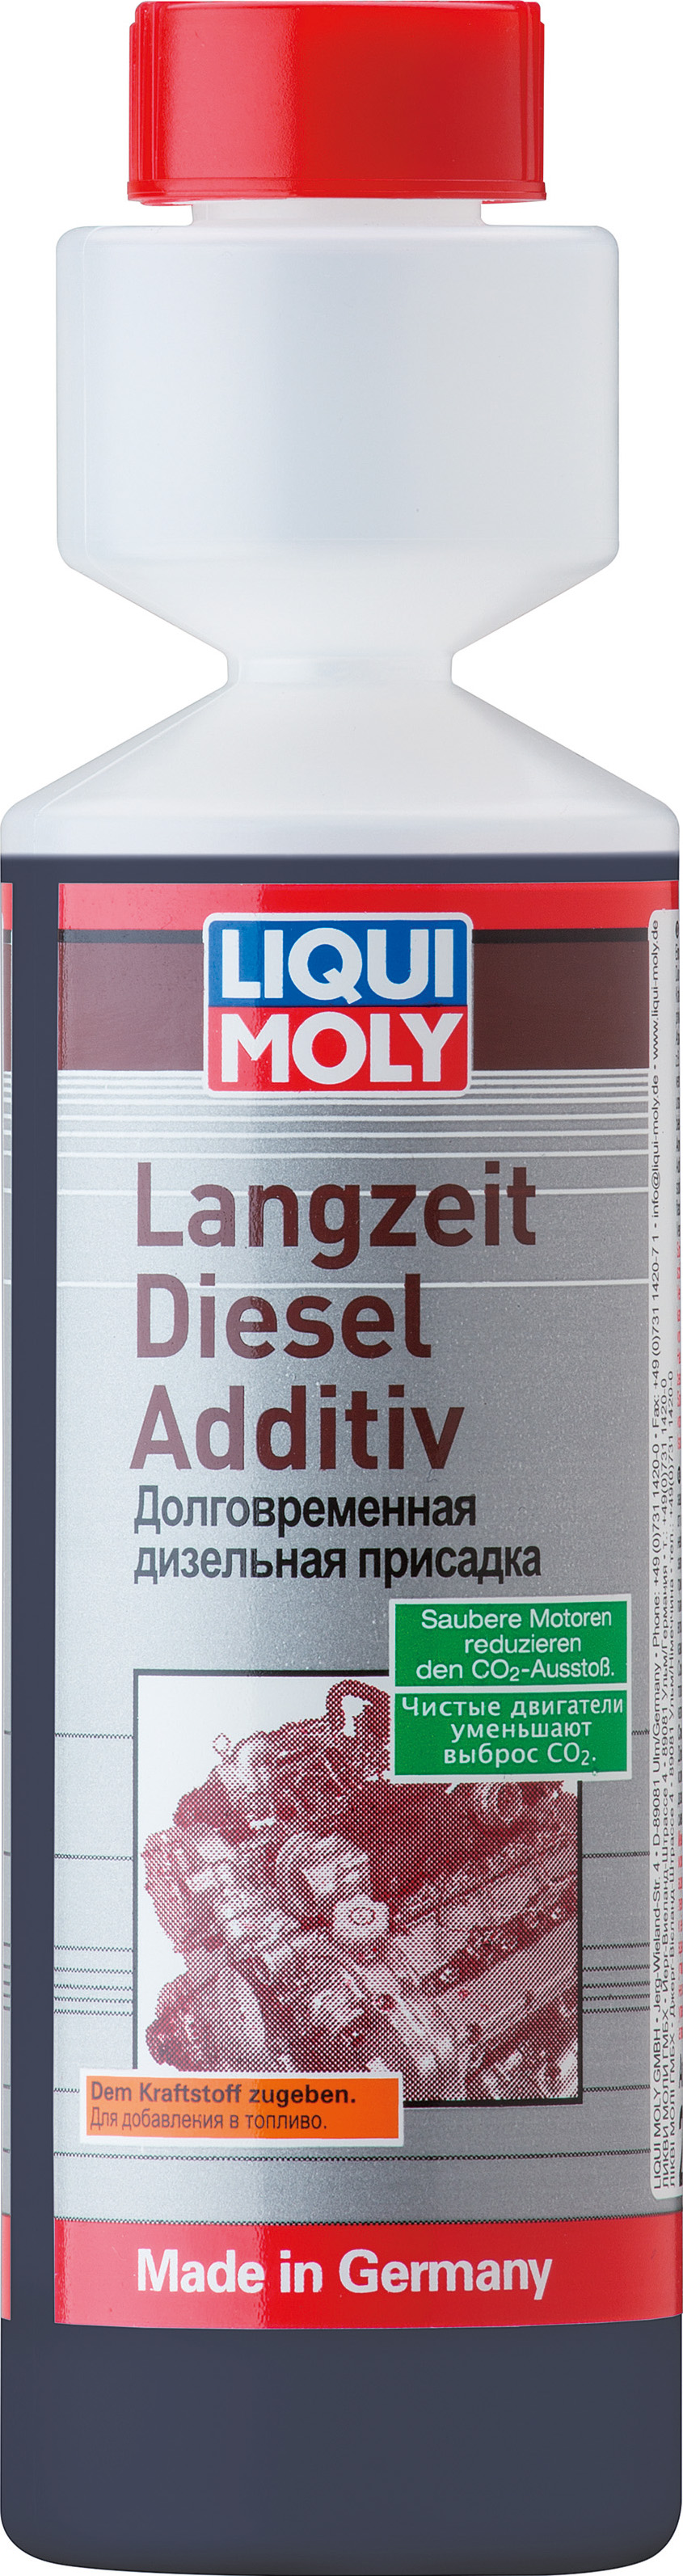 Присадка дизельная долговременная Langzeit Diesel Additiv (0,25л) - Liqui Moly 2355